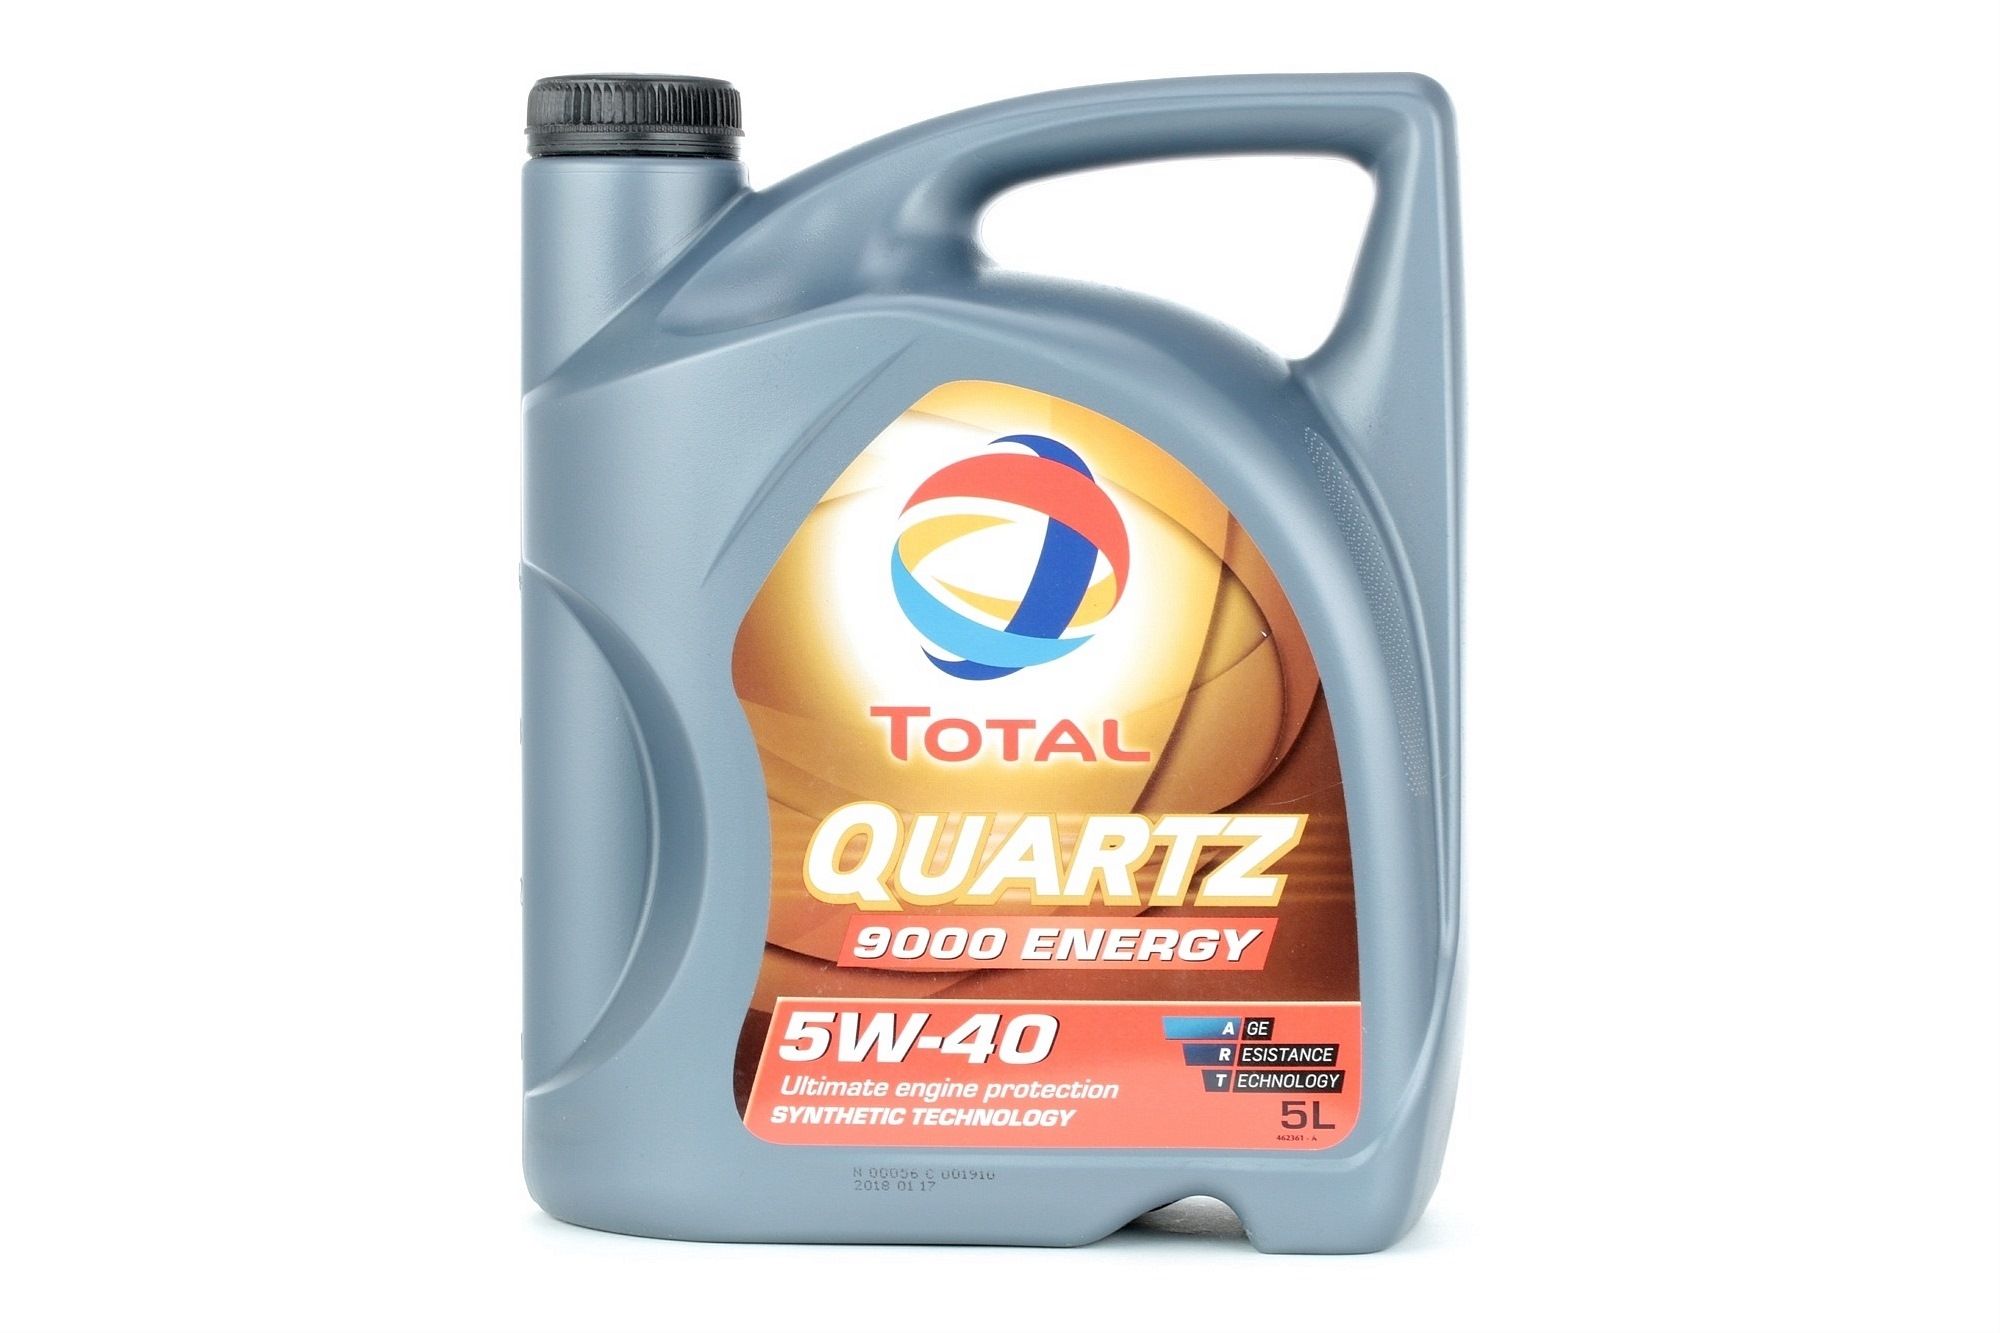 2198206 TOTAL Quartz, 9000 Energy 5W-40, 5L, Synthetische olie Motorolie 2198206 koop goedkoop